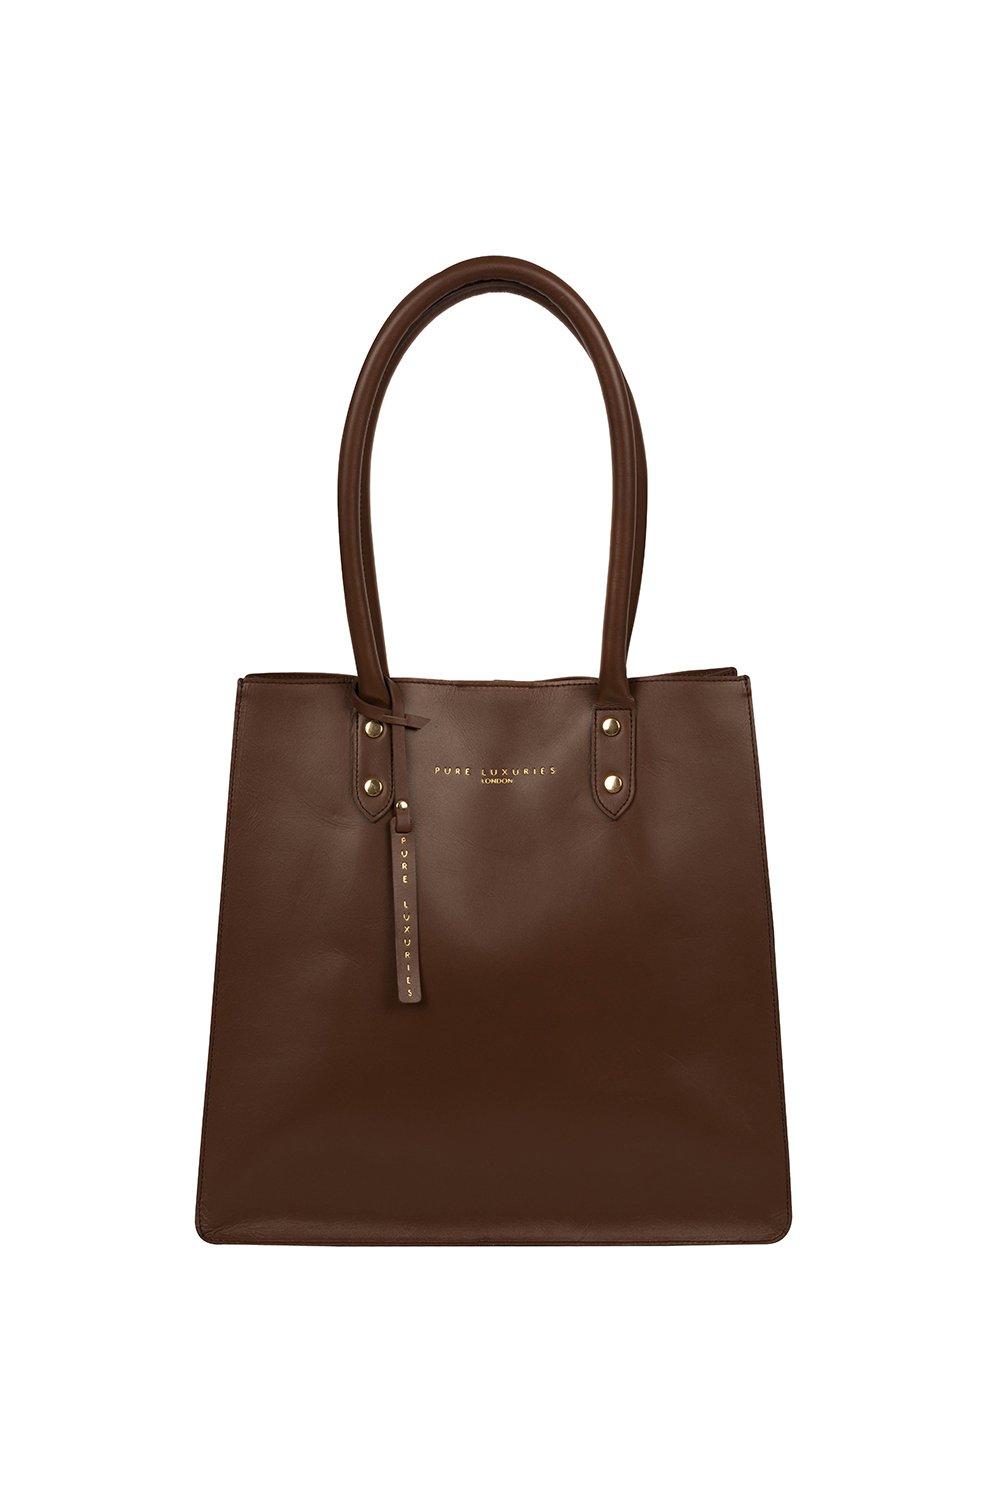 Сумка-шоппер Henley из кожи растительного дубления Pure Luxuries London, коричневый сумка тоут женская из мягкой пу кожи матовая 2020